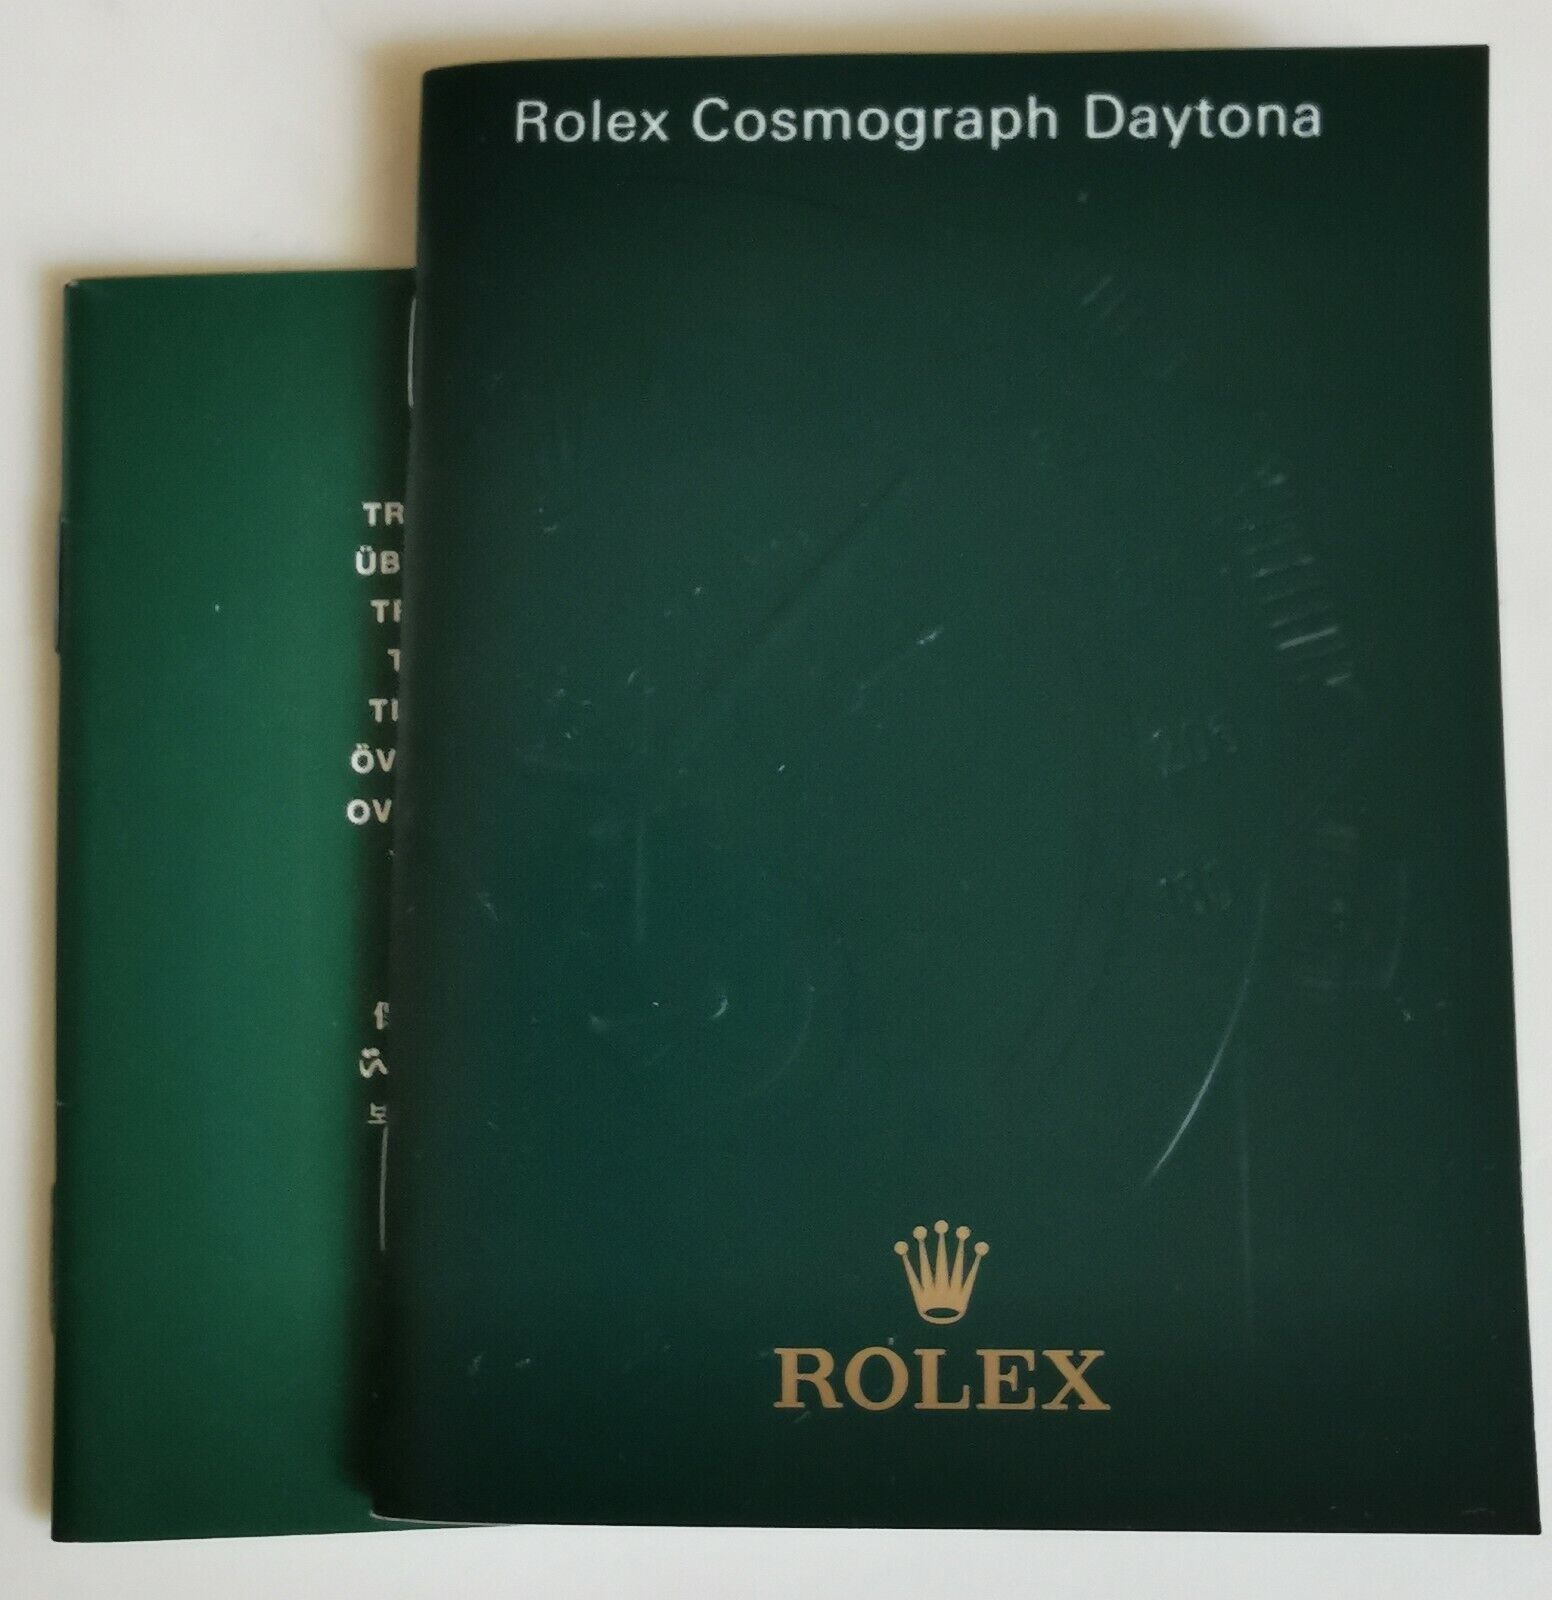 Original Vintage Rolex Daytona and Translation Booklet ref 116520, 2007